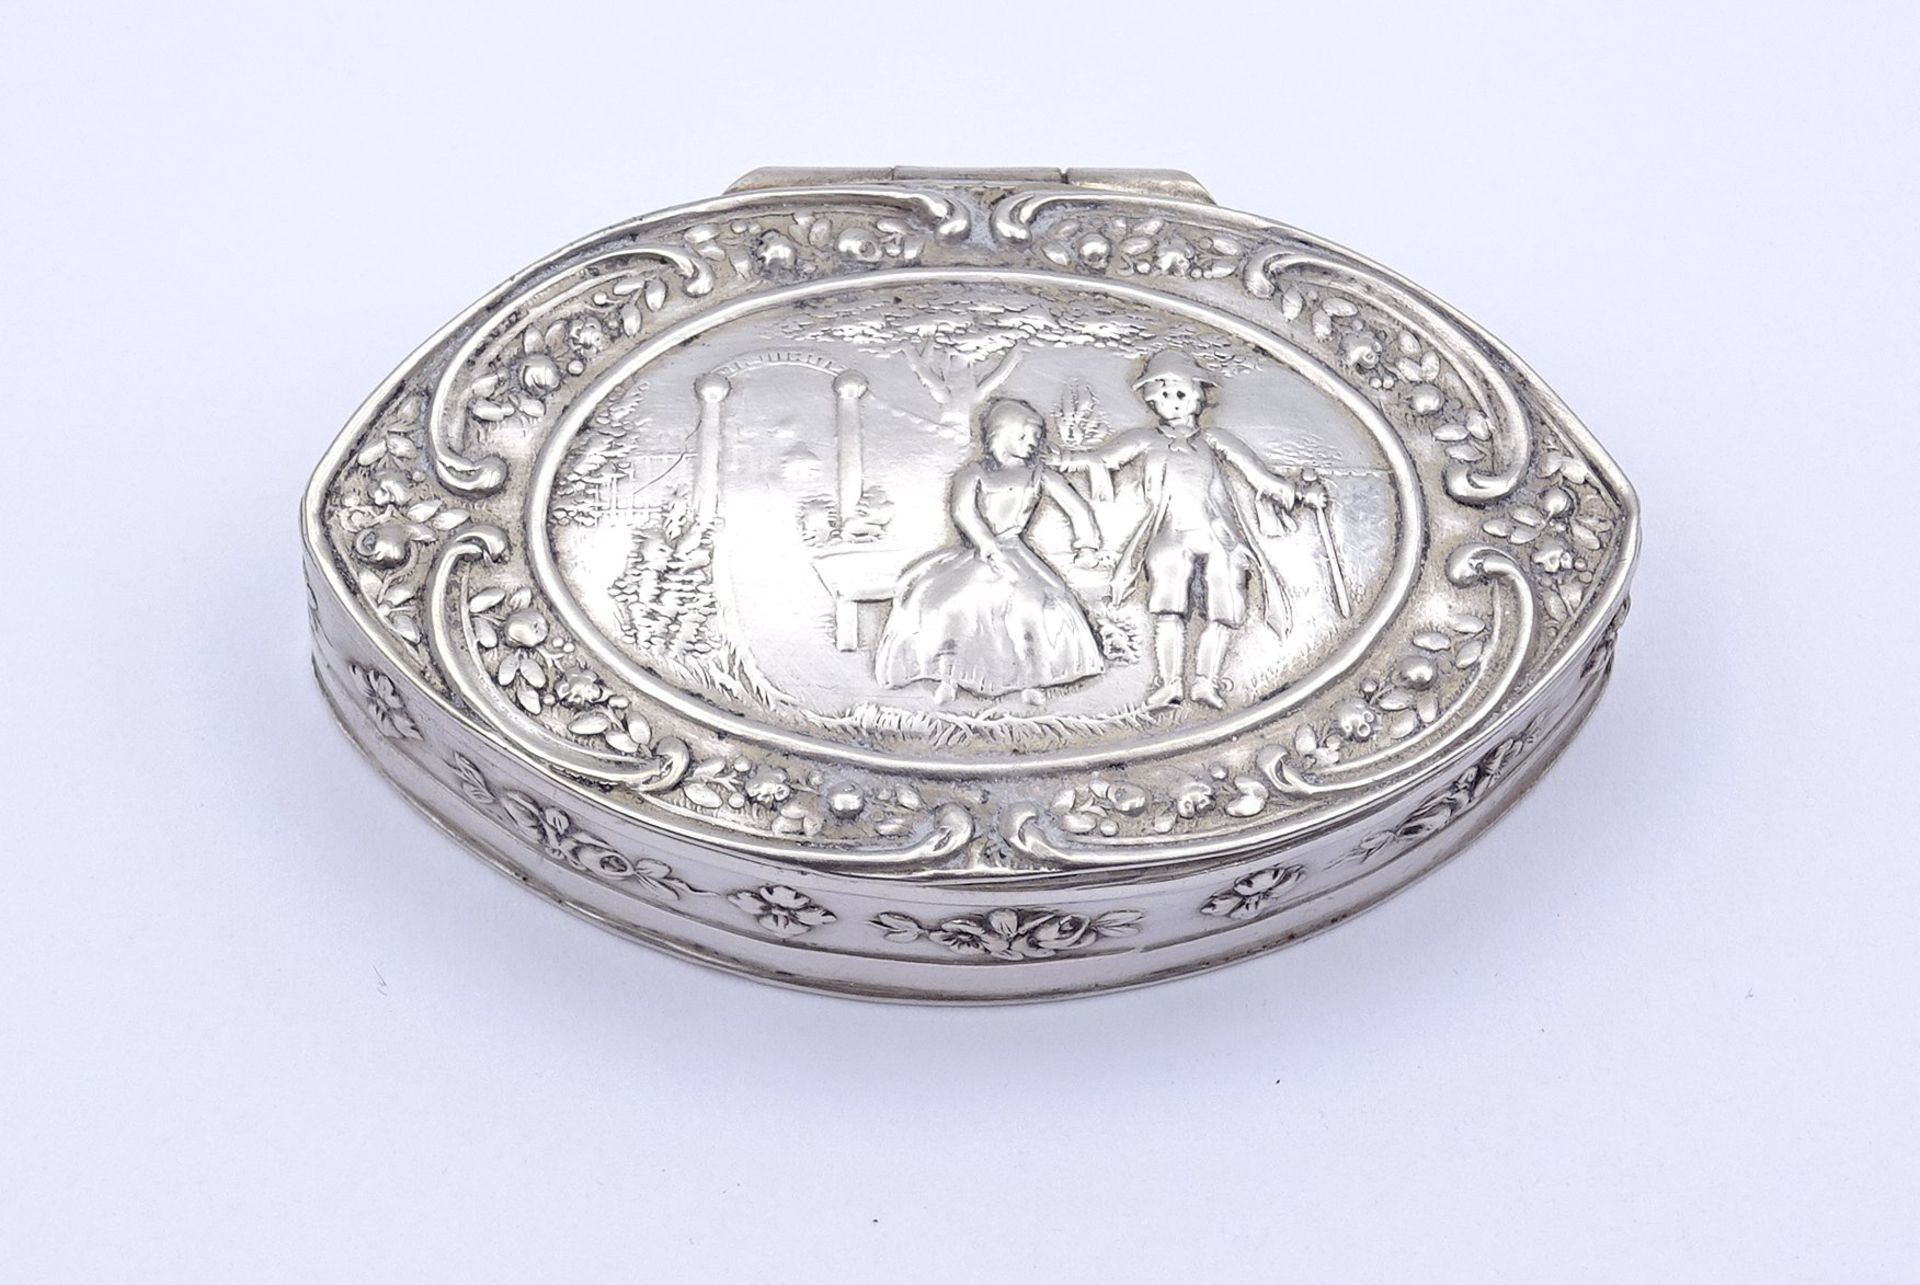 Silberne Pillendose mit figürlicher Szene, Silber geprüft, 5,8 x 3,5 x 1,3 cm, 29 gr., mit leichten